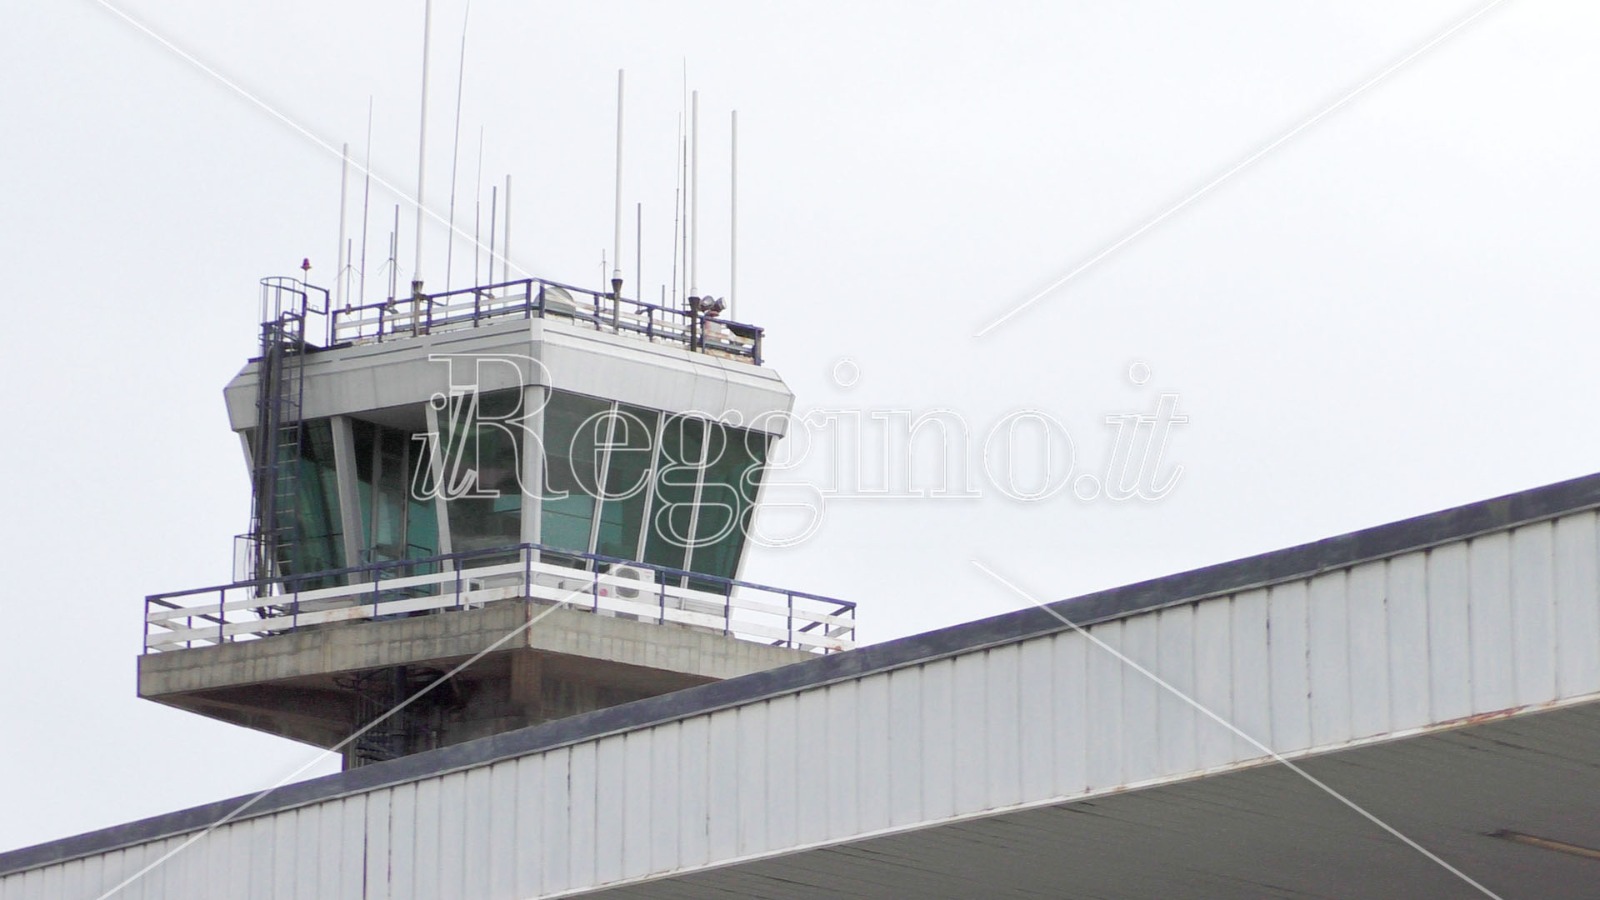 Aeroporto dello Stretto, è rottura tra task force comunale e Sacal